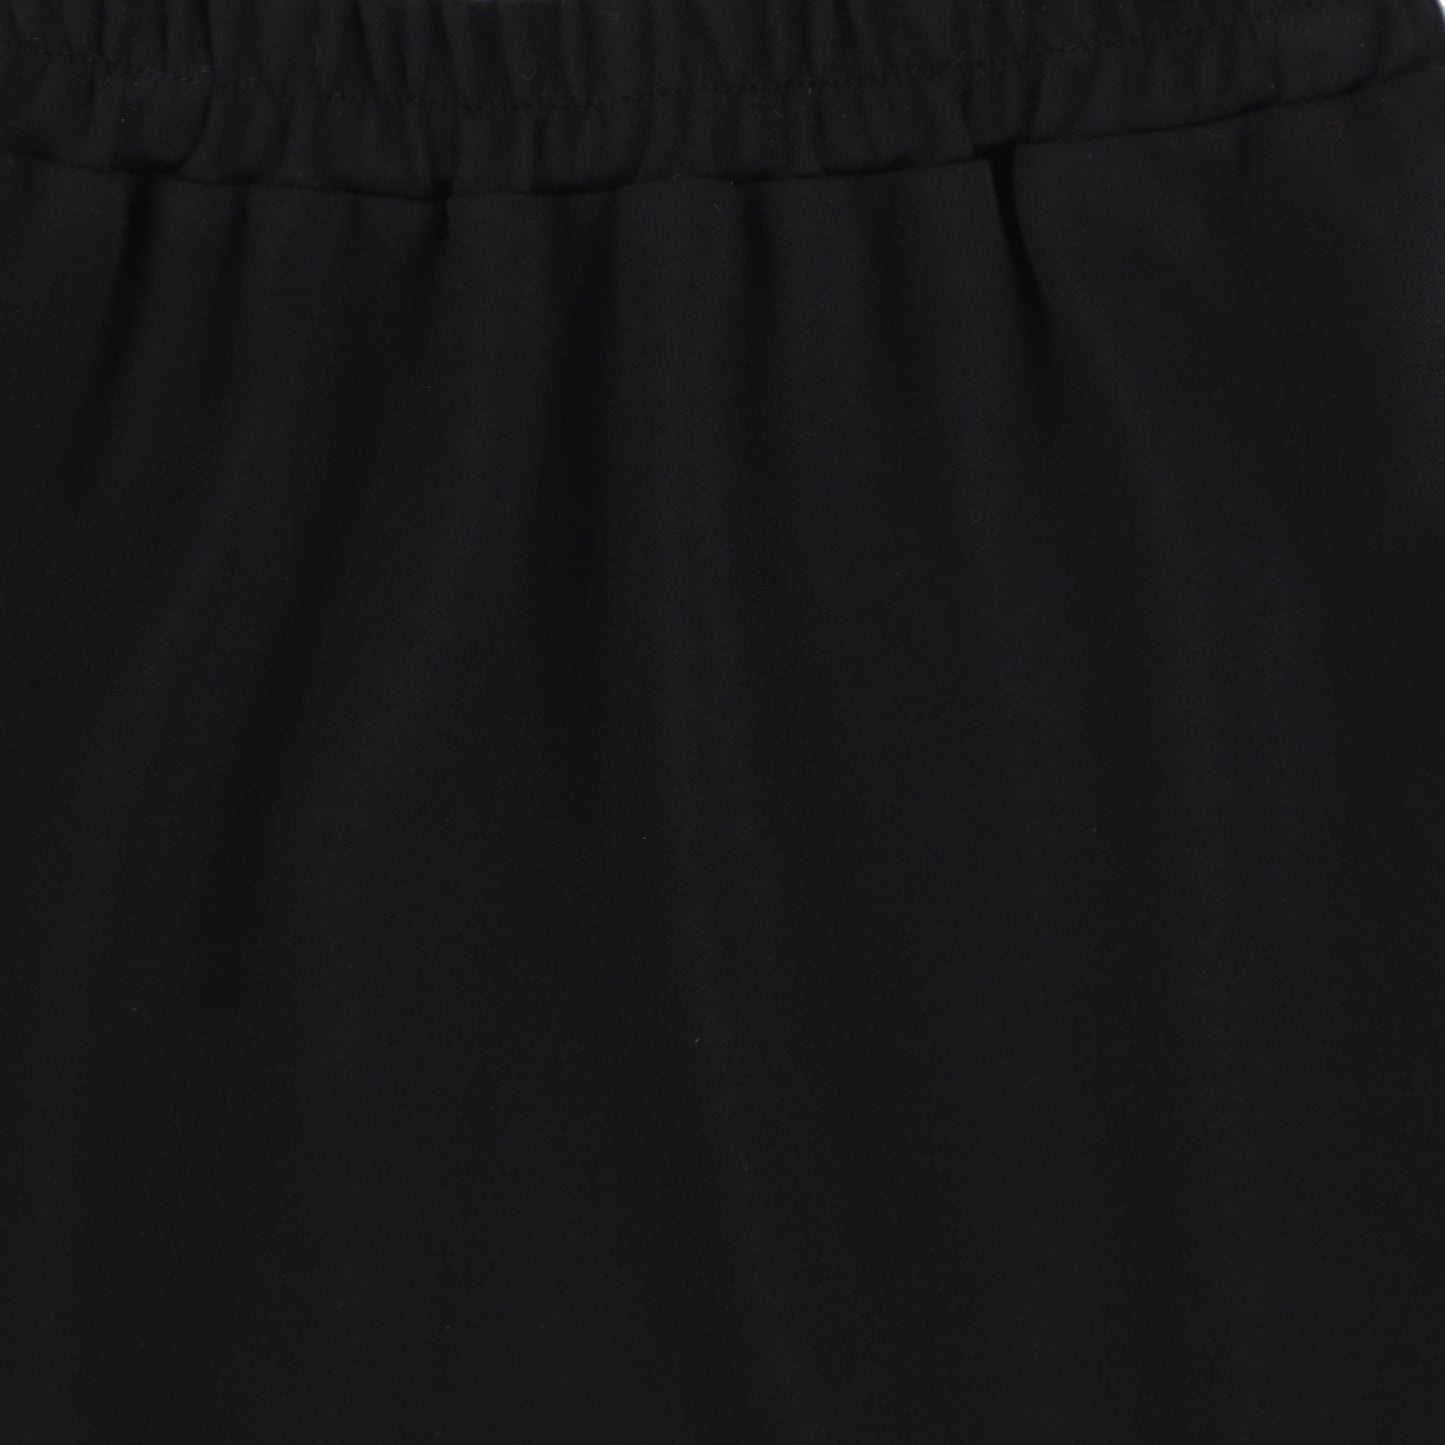 One Child Black Seam Wash Aline Skirt [Final Sale]